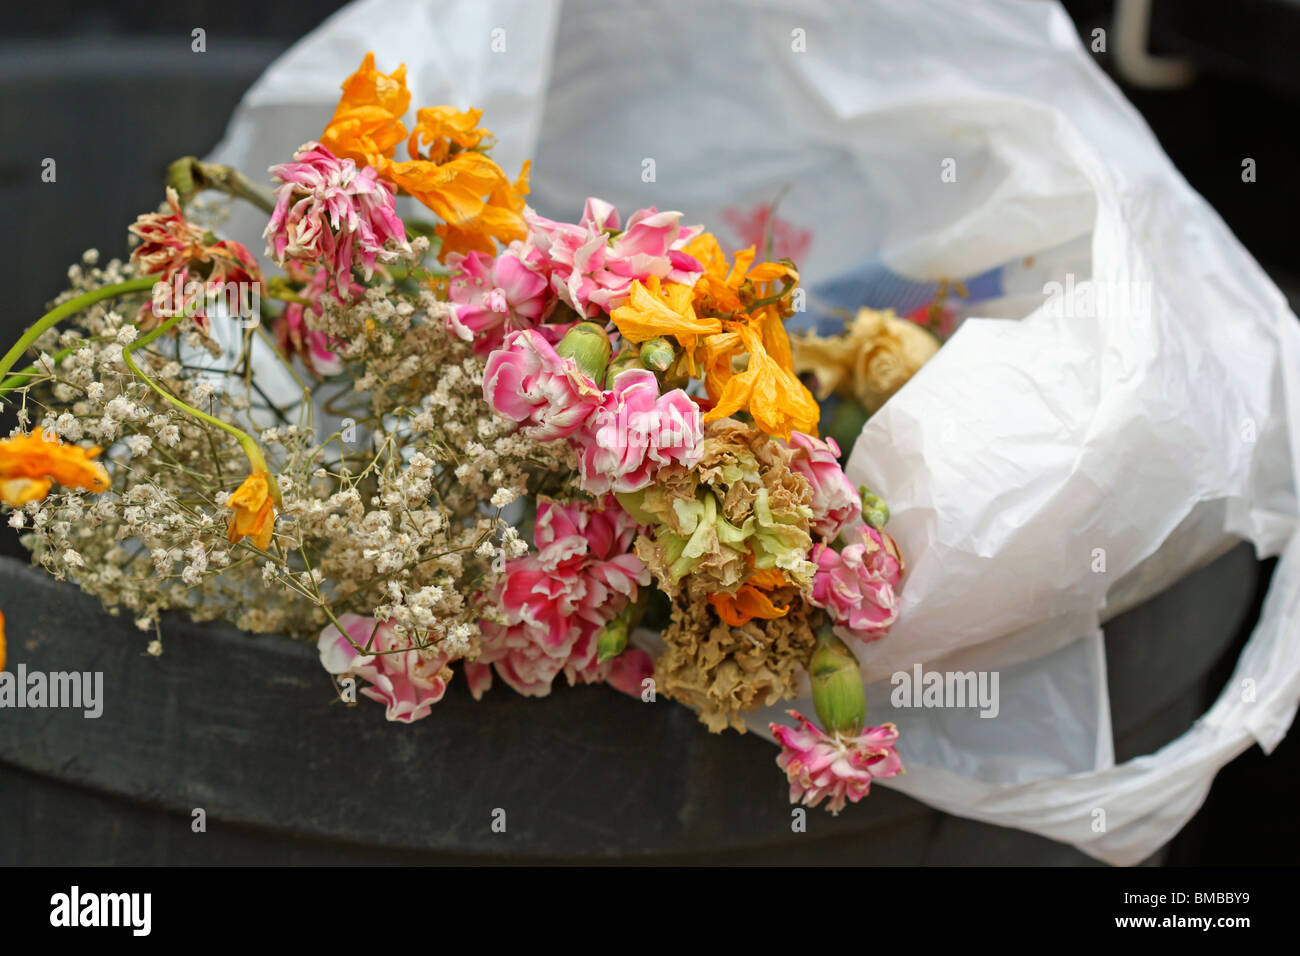 dead flowers in the trash bucket/ waste bin/ rubbish bin/ garbage bin Stock Photo